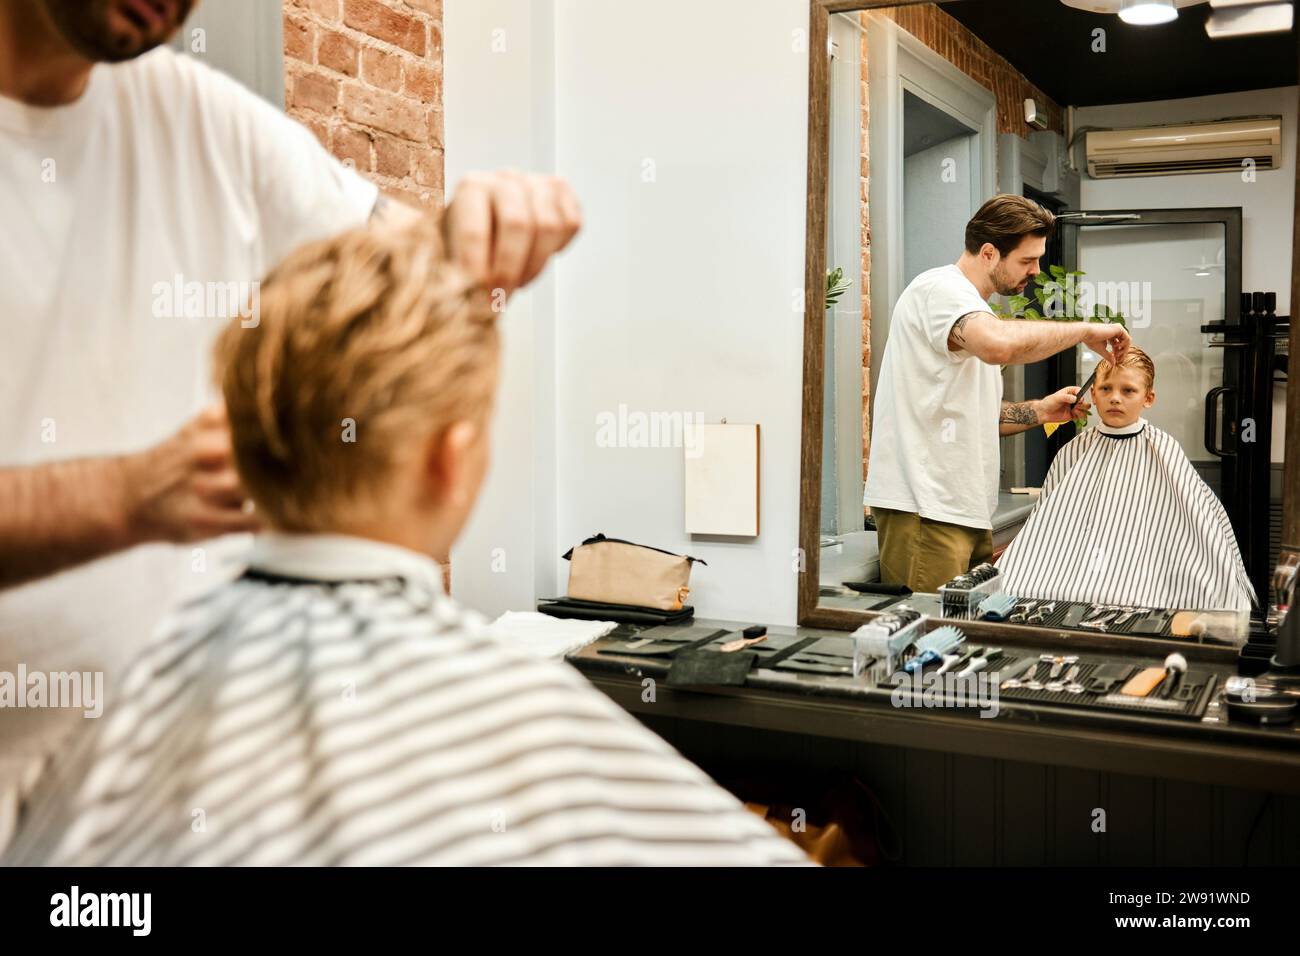 Friseur schneidet die Haare des Kunden vor dem Spiegel im Salon Stockfoto